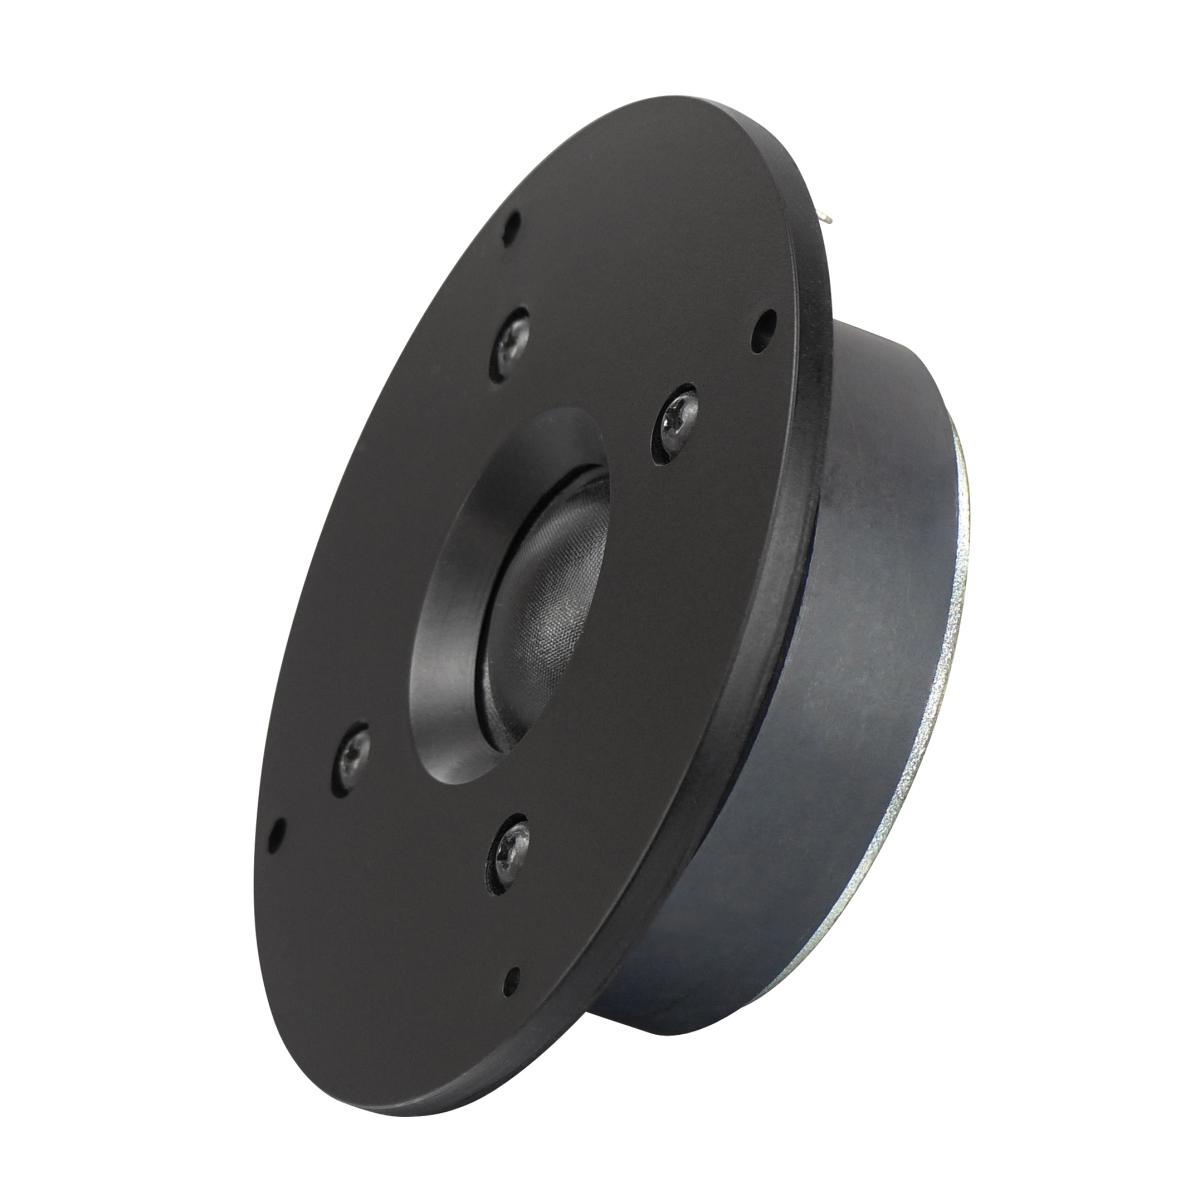 Tweeter à dôme circulaire haute qualité noir bobine : 25mm 25w rms